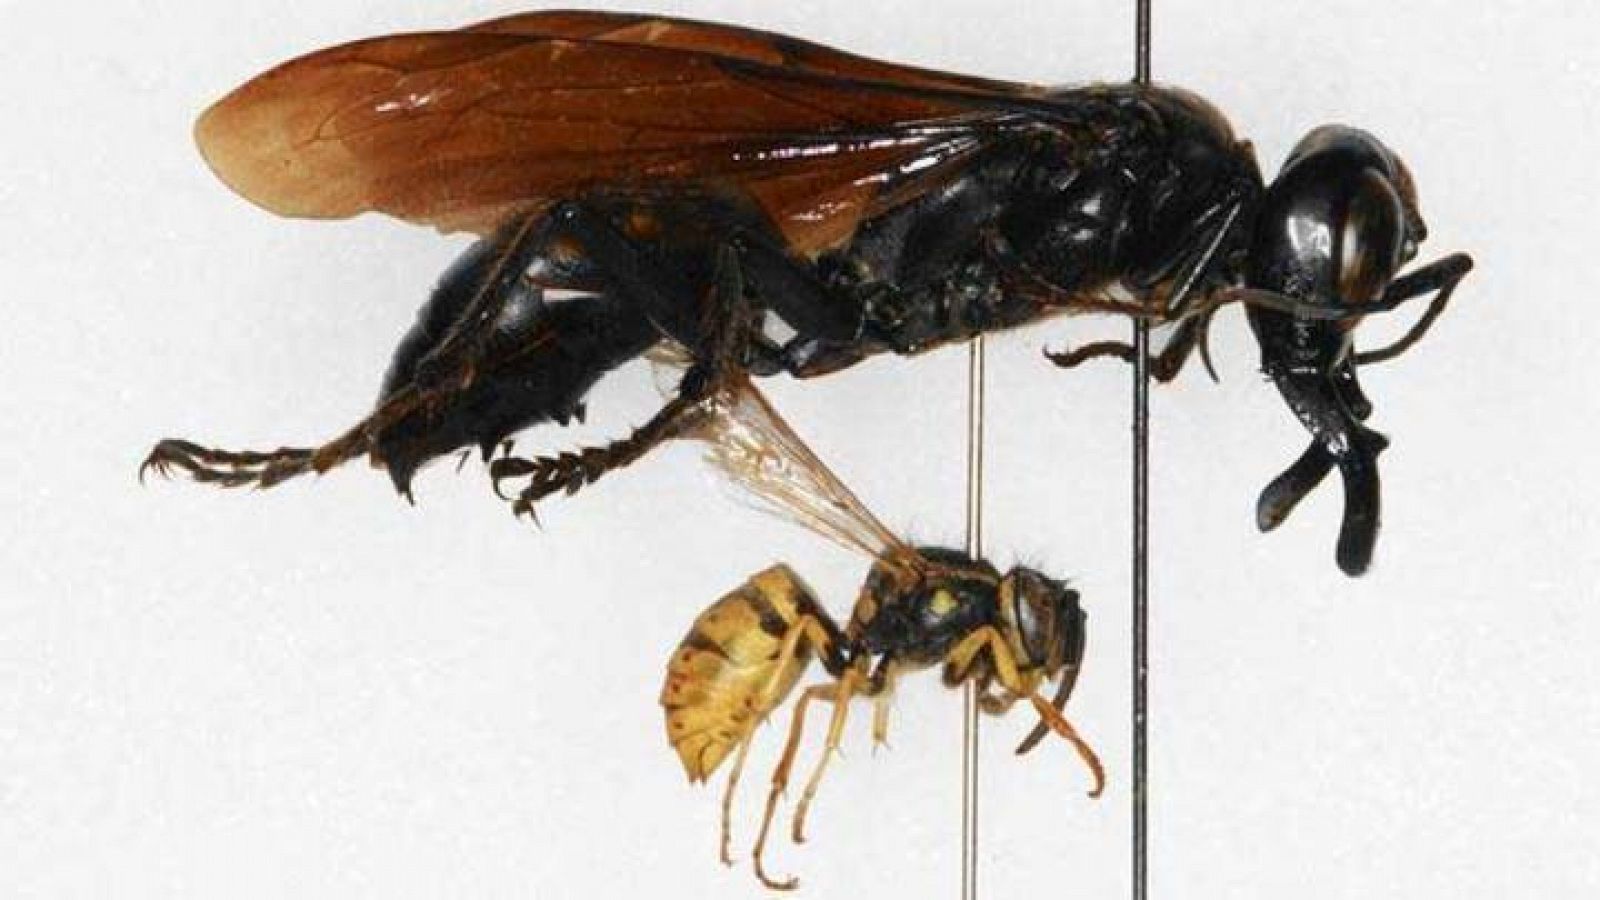 La 'Megalara garuda' es visiblemente mayor que una avispa común.